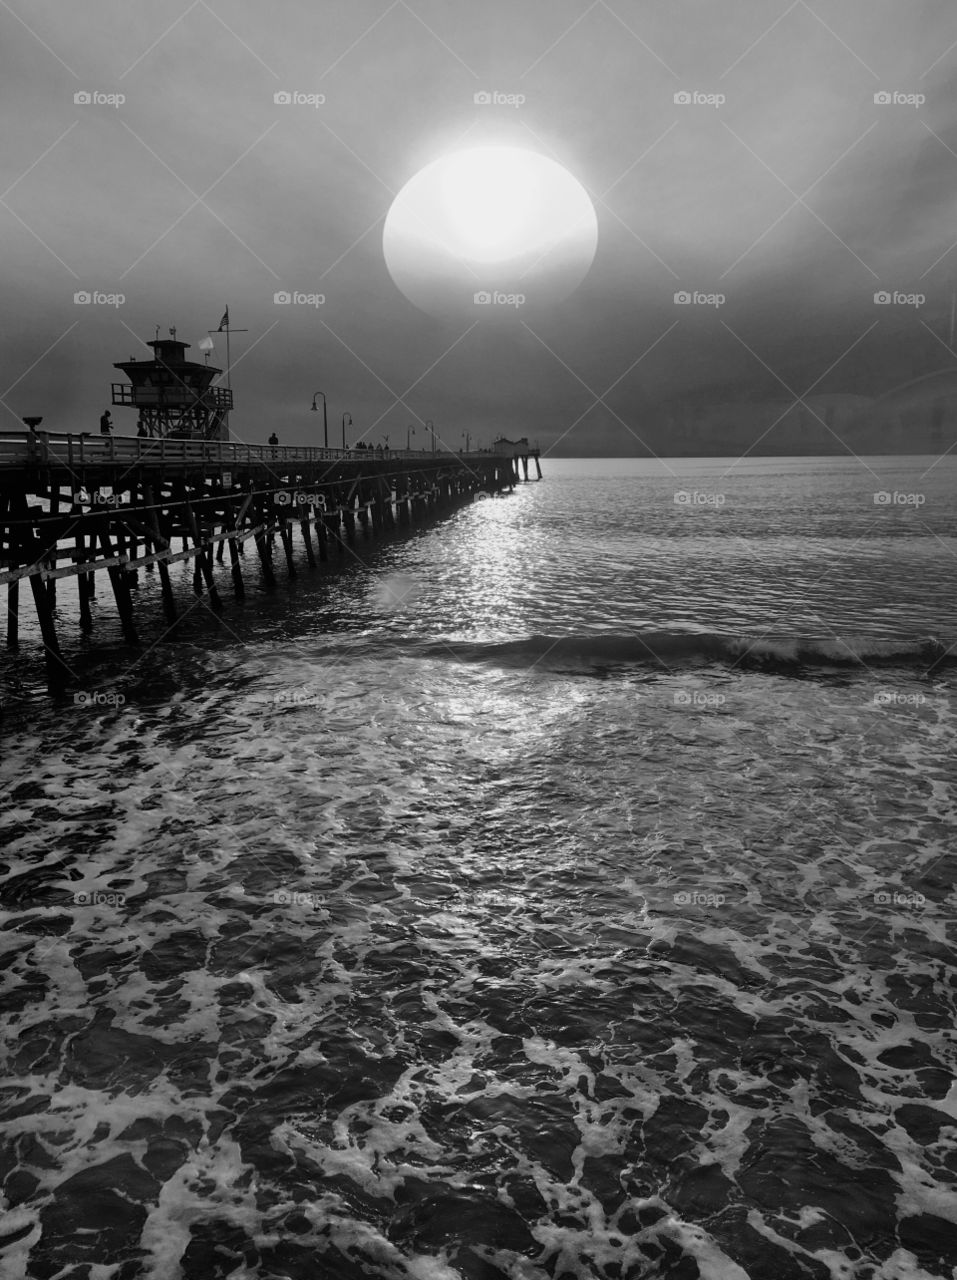 Foap Mission Monochrome Photography! Monochrome Shot Sunset At The Pier!